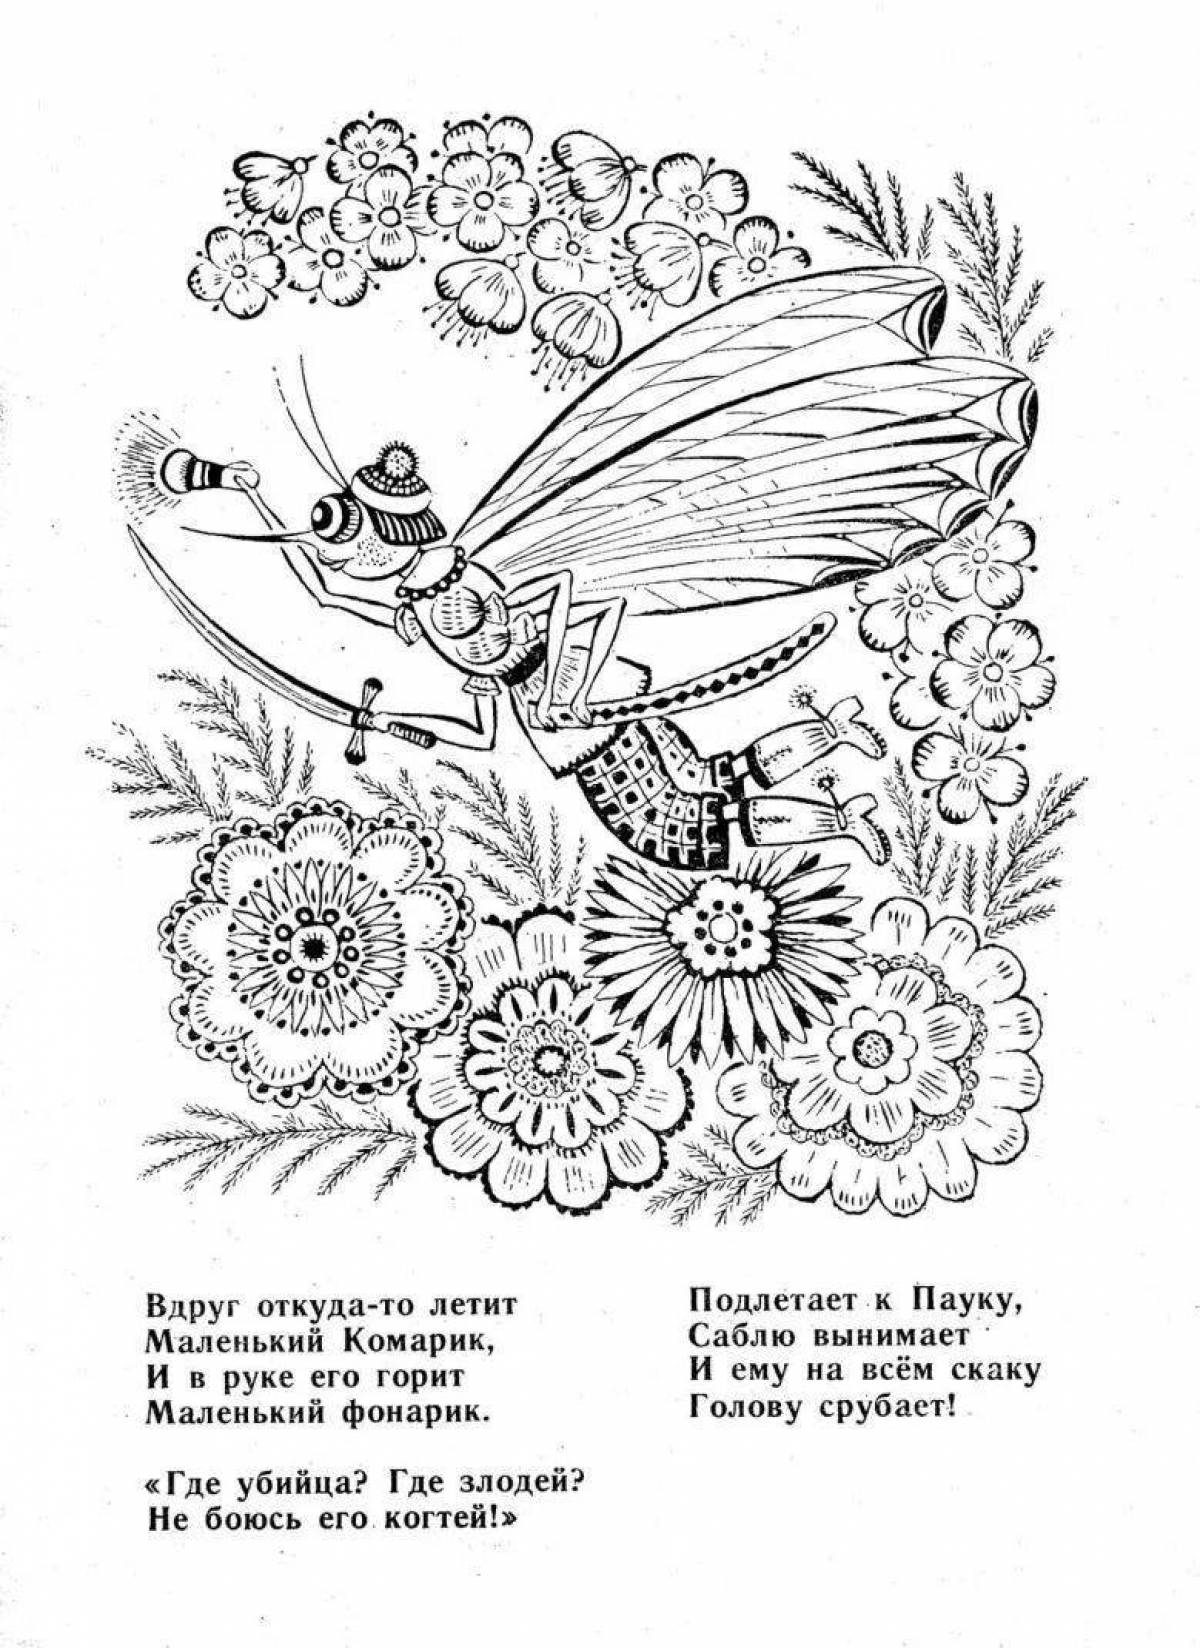 Chukovsky fly tsokotuha #1